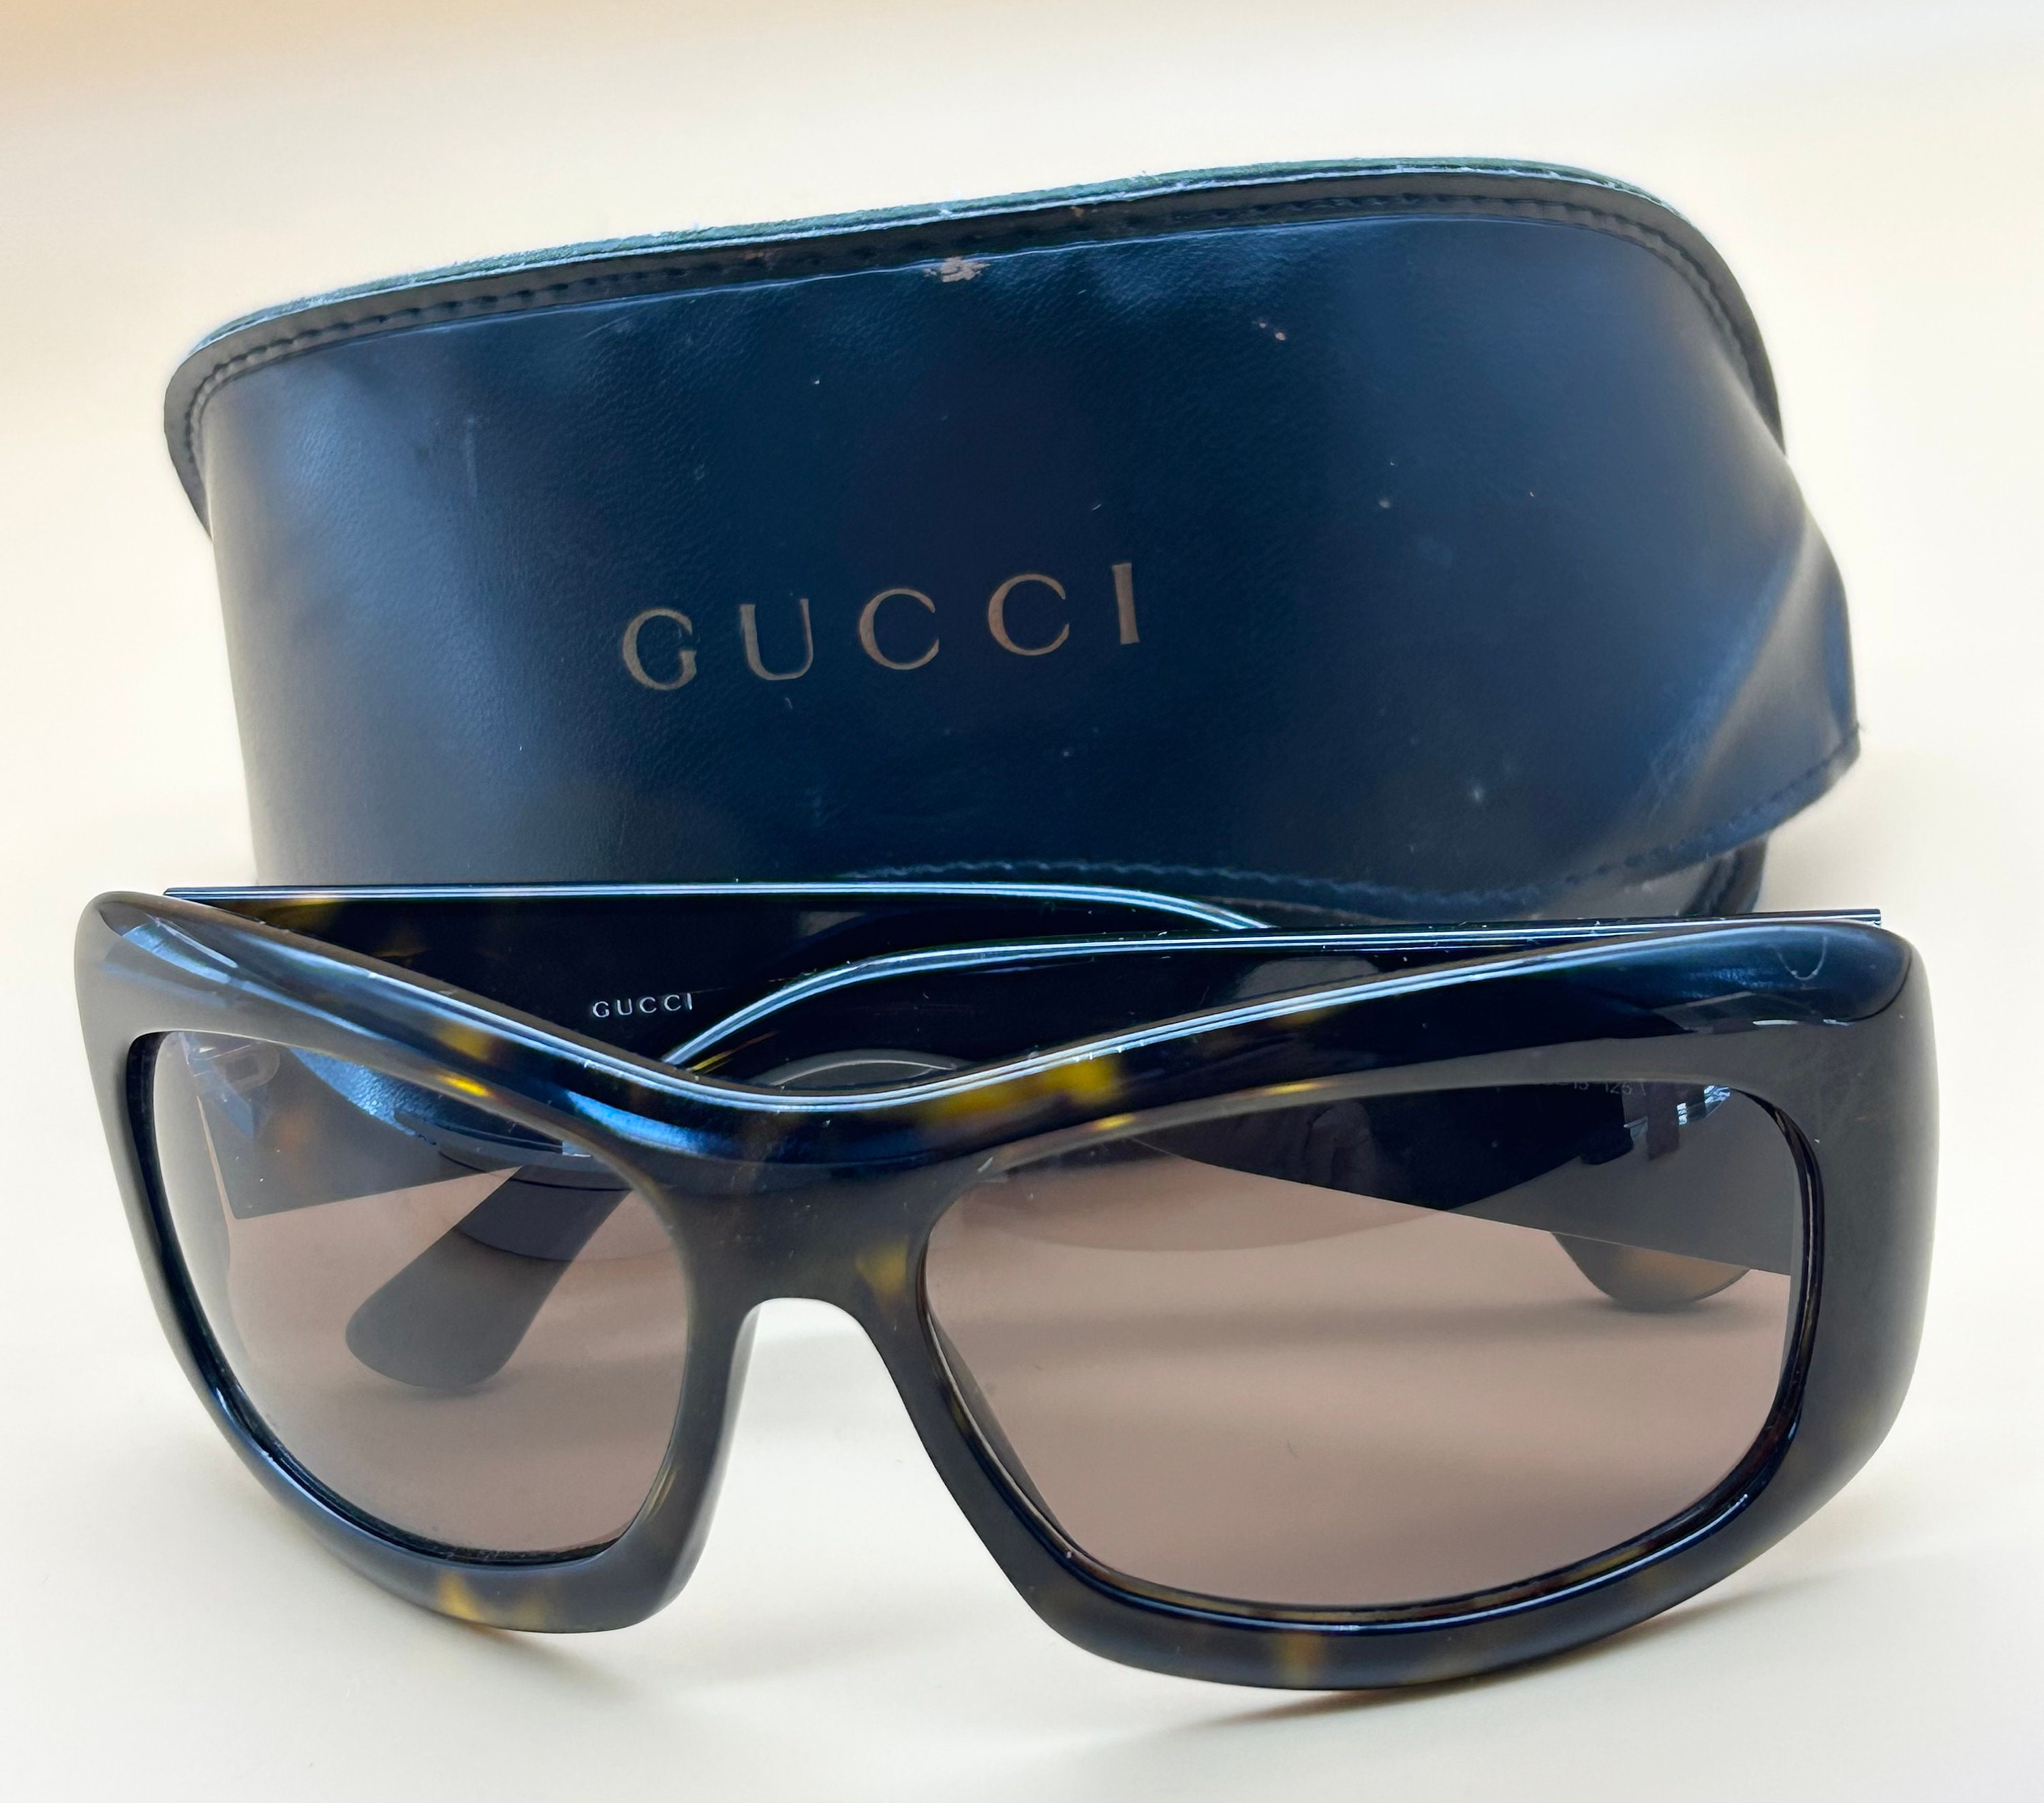 Græsse metallisk tyveri Gucci Sunglasses Vintage - Etsy